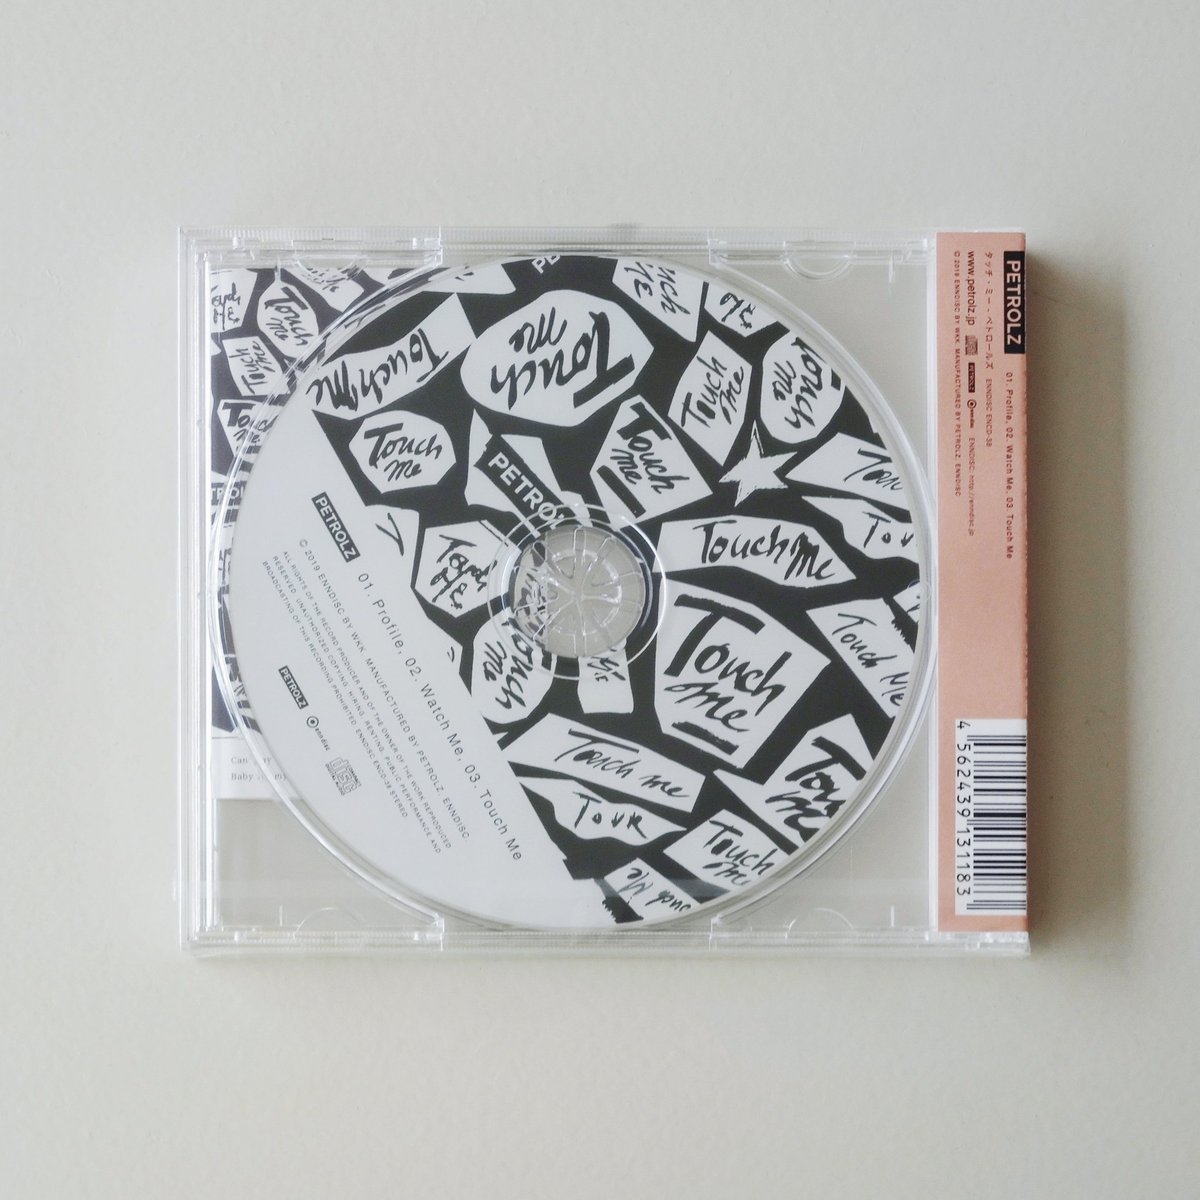 限定盤】PETROLZ / GGKKNRSSSTW CD+LP ペトロールズ アナログ レコード